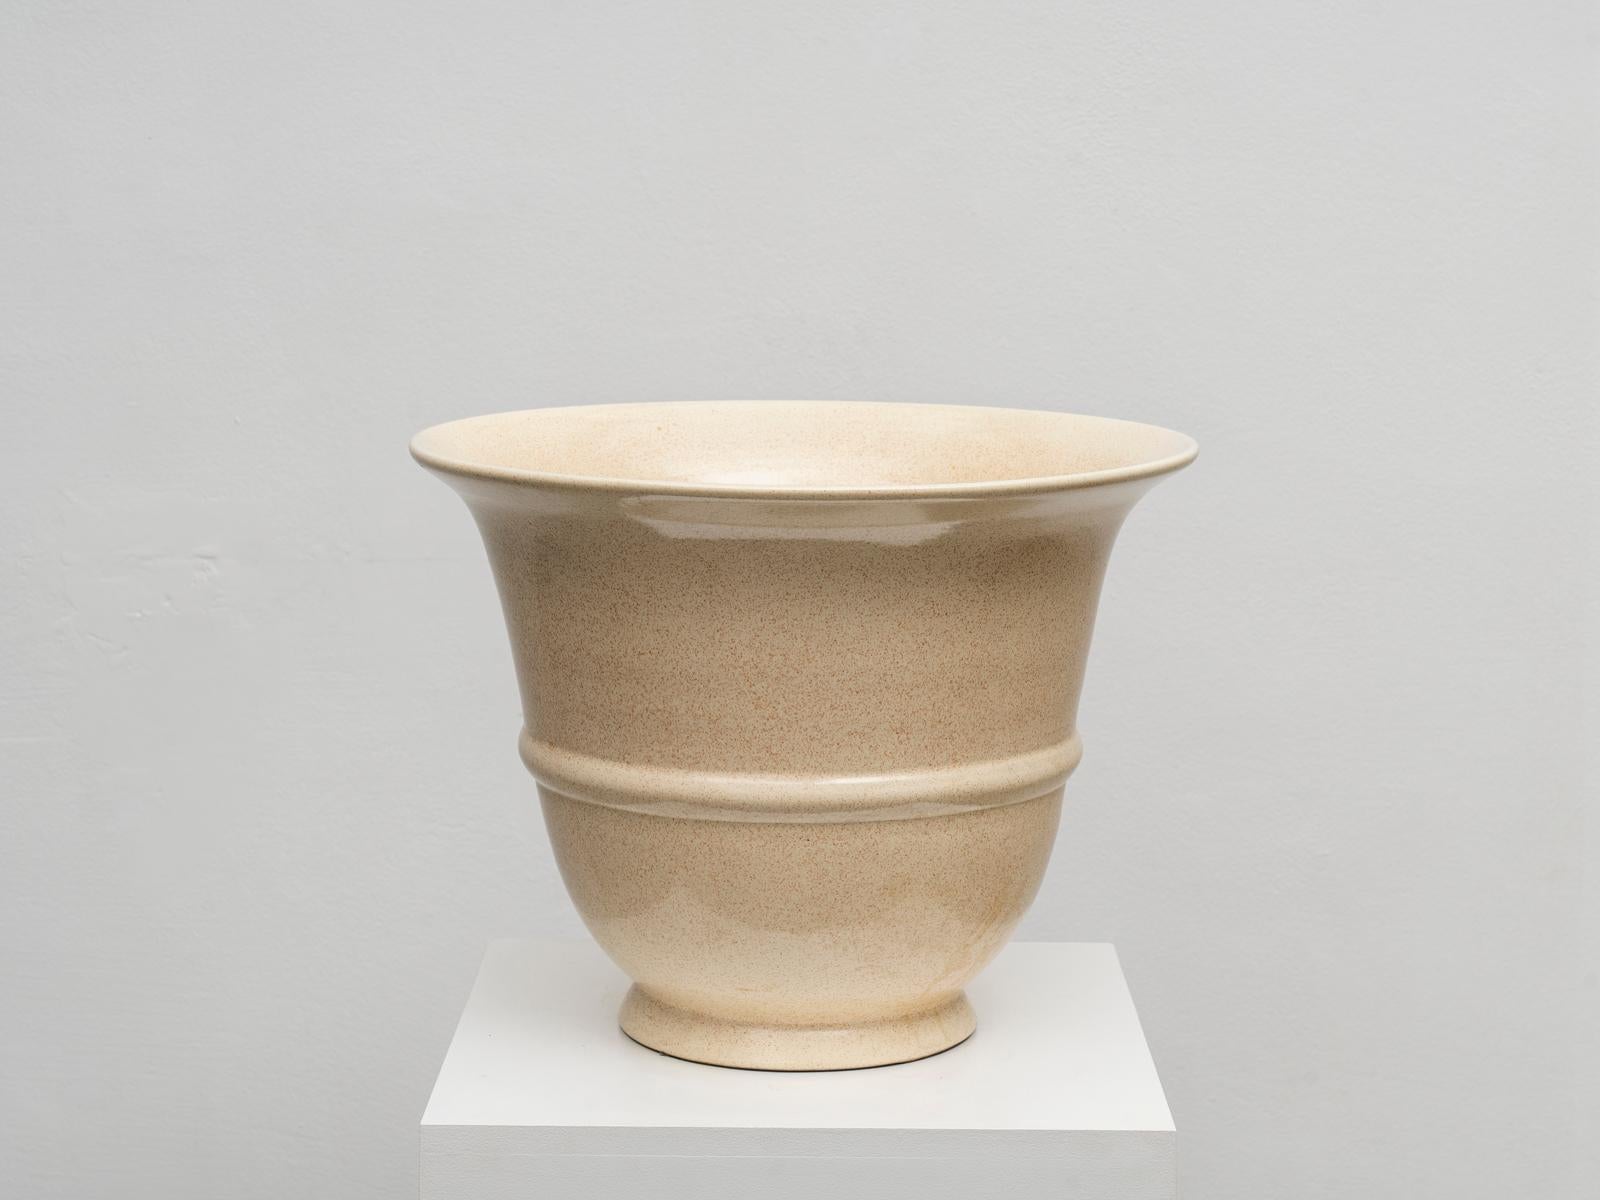 Dieser Übertopf oder diese Vase aus Keramik wurde von dem italienischen Designer und Künstler Tommaso Barbi entworfen, der in den 1970er und 1980er Jahren sehr einflussreich war. Dank seiner monumentalen Größe und dem raffinierten Tupfendekor, das